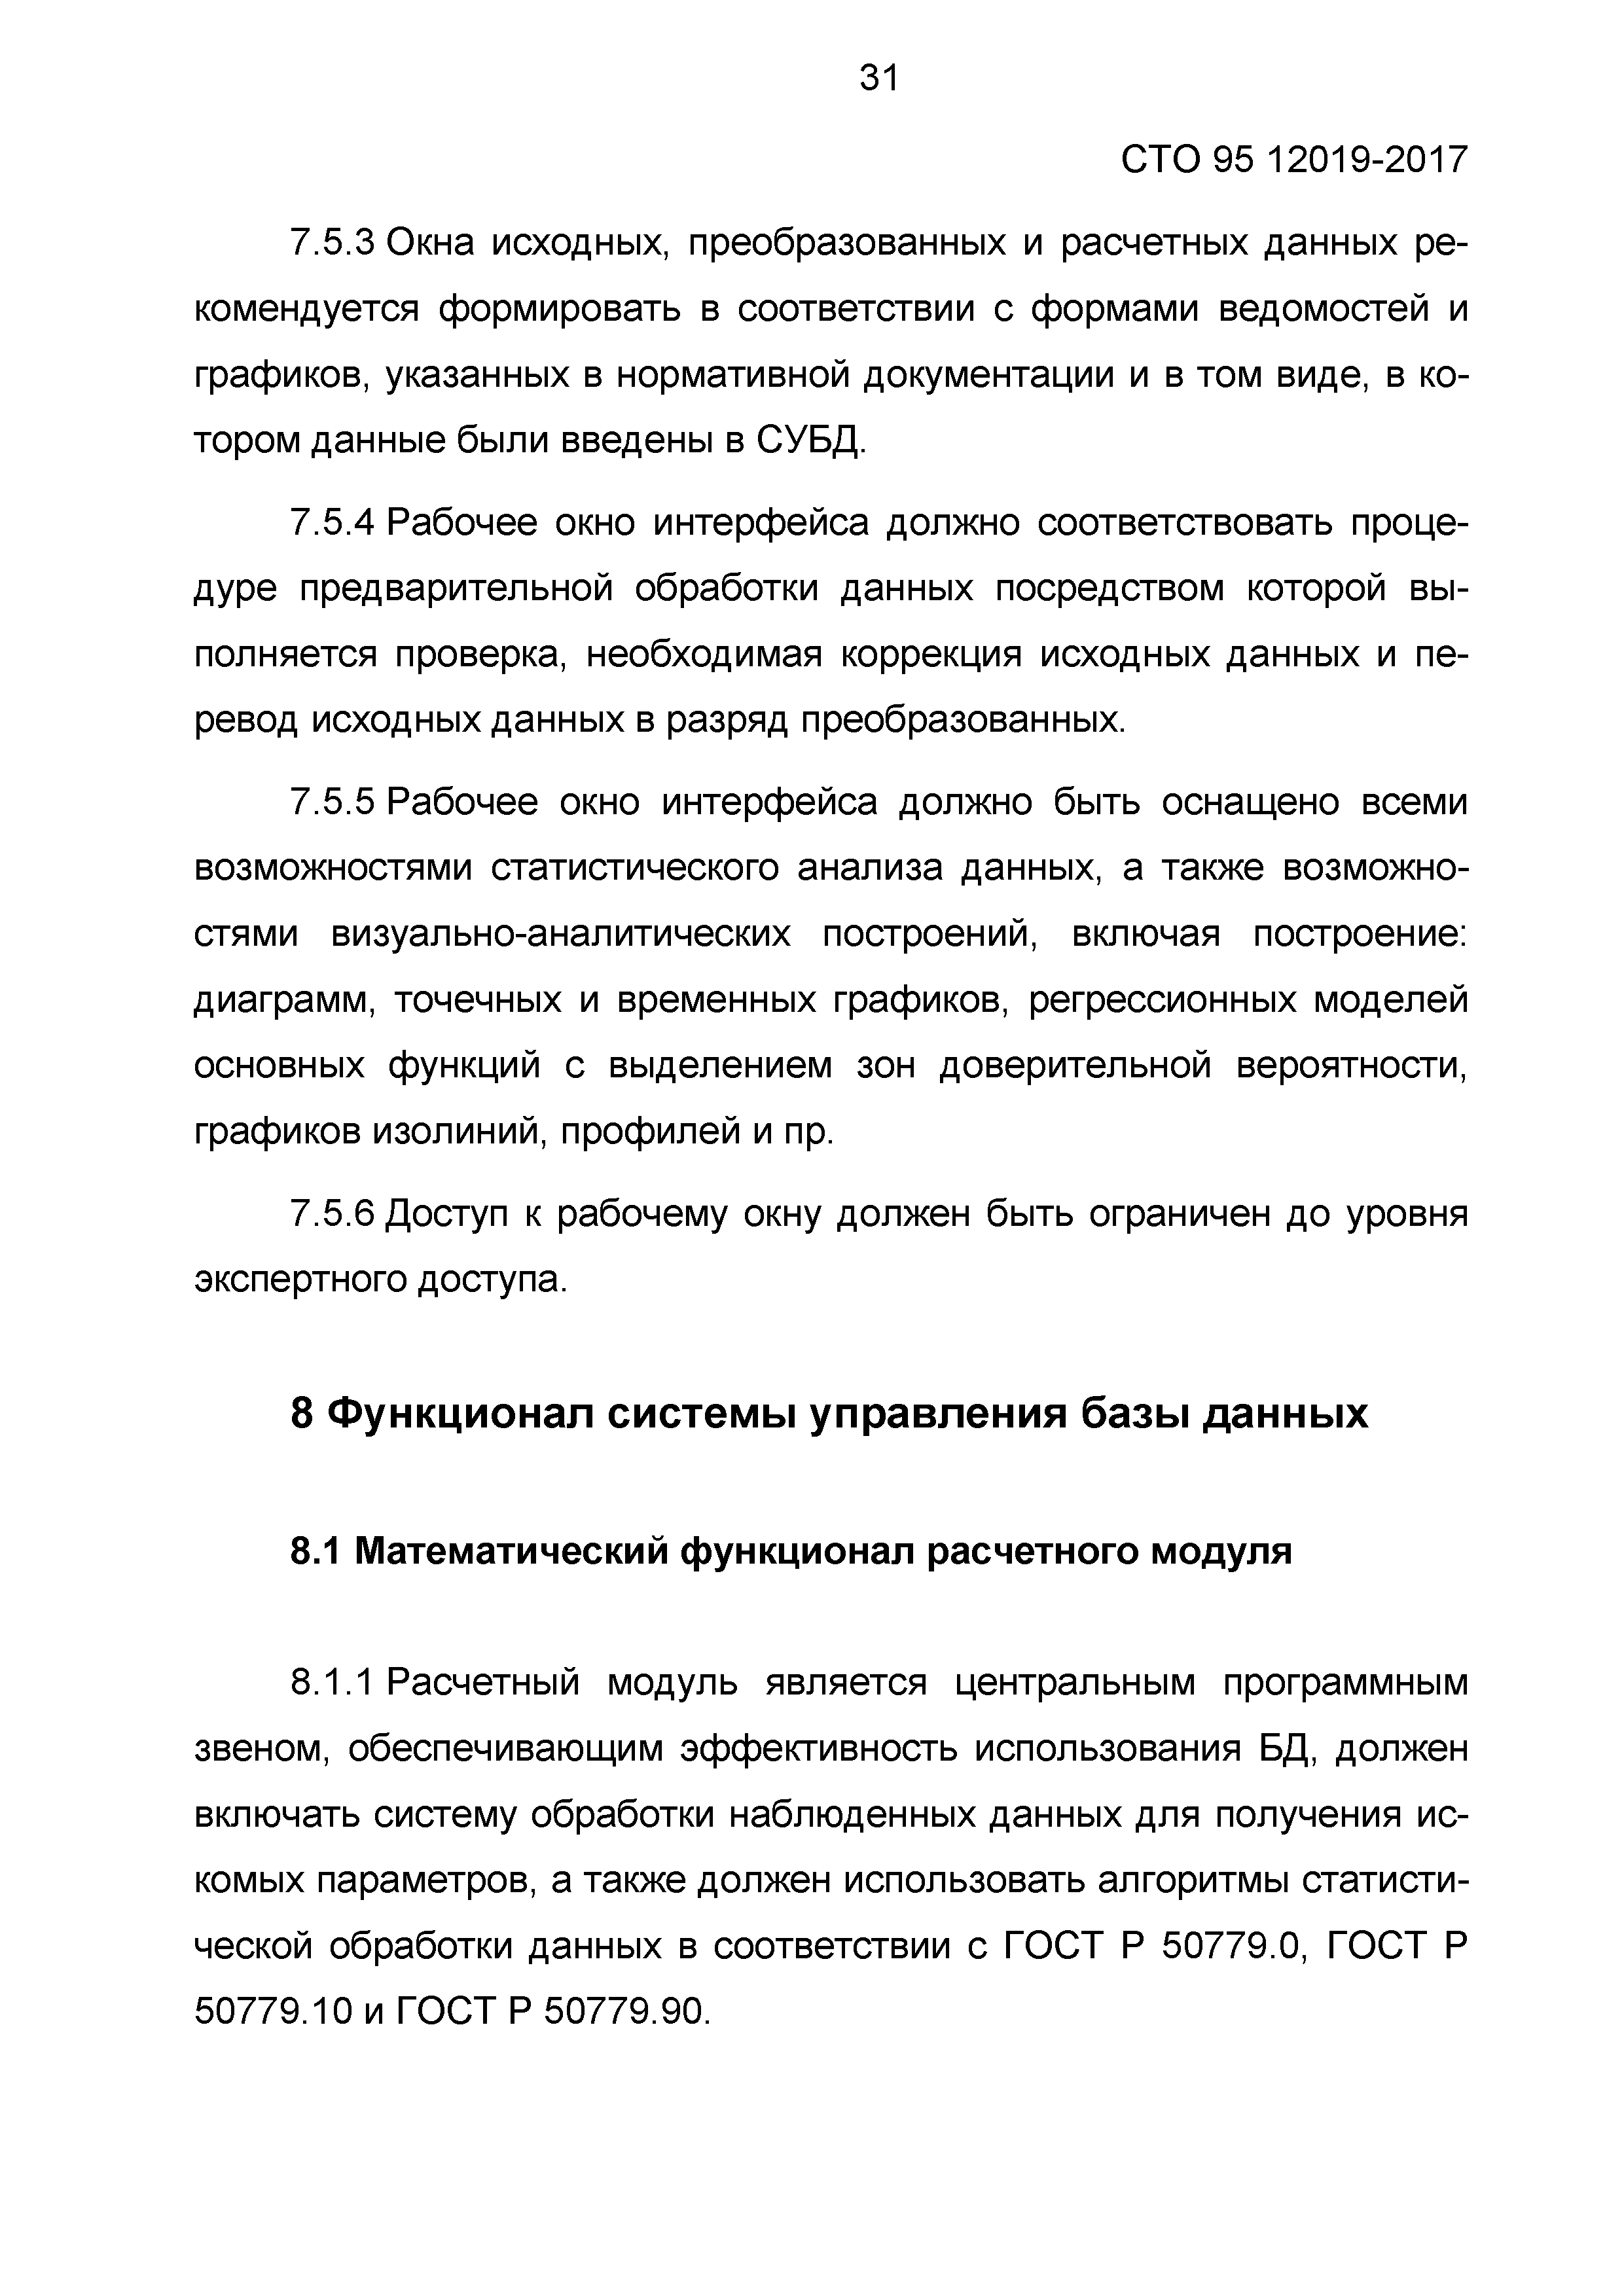 СТО 95 12019-2017